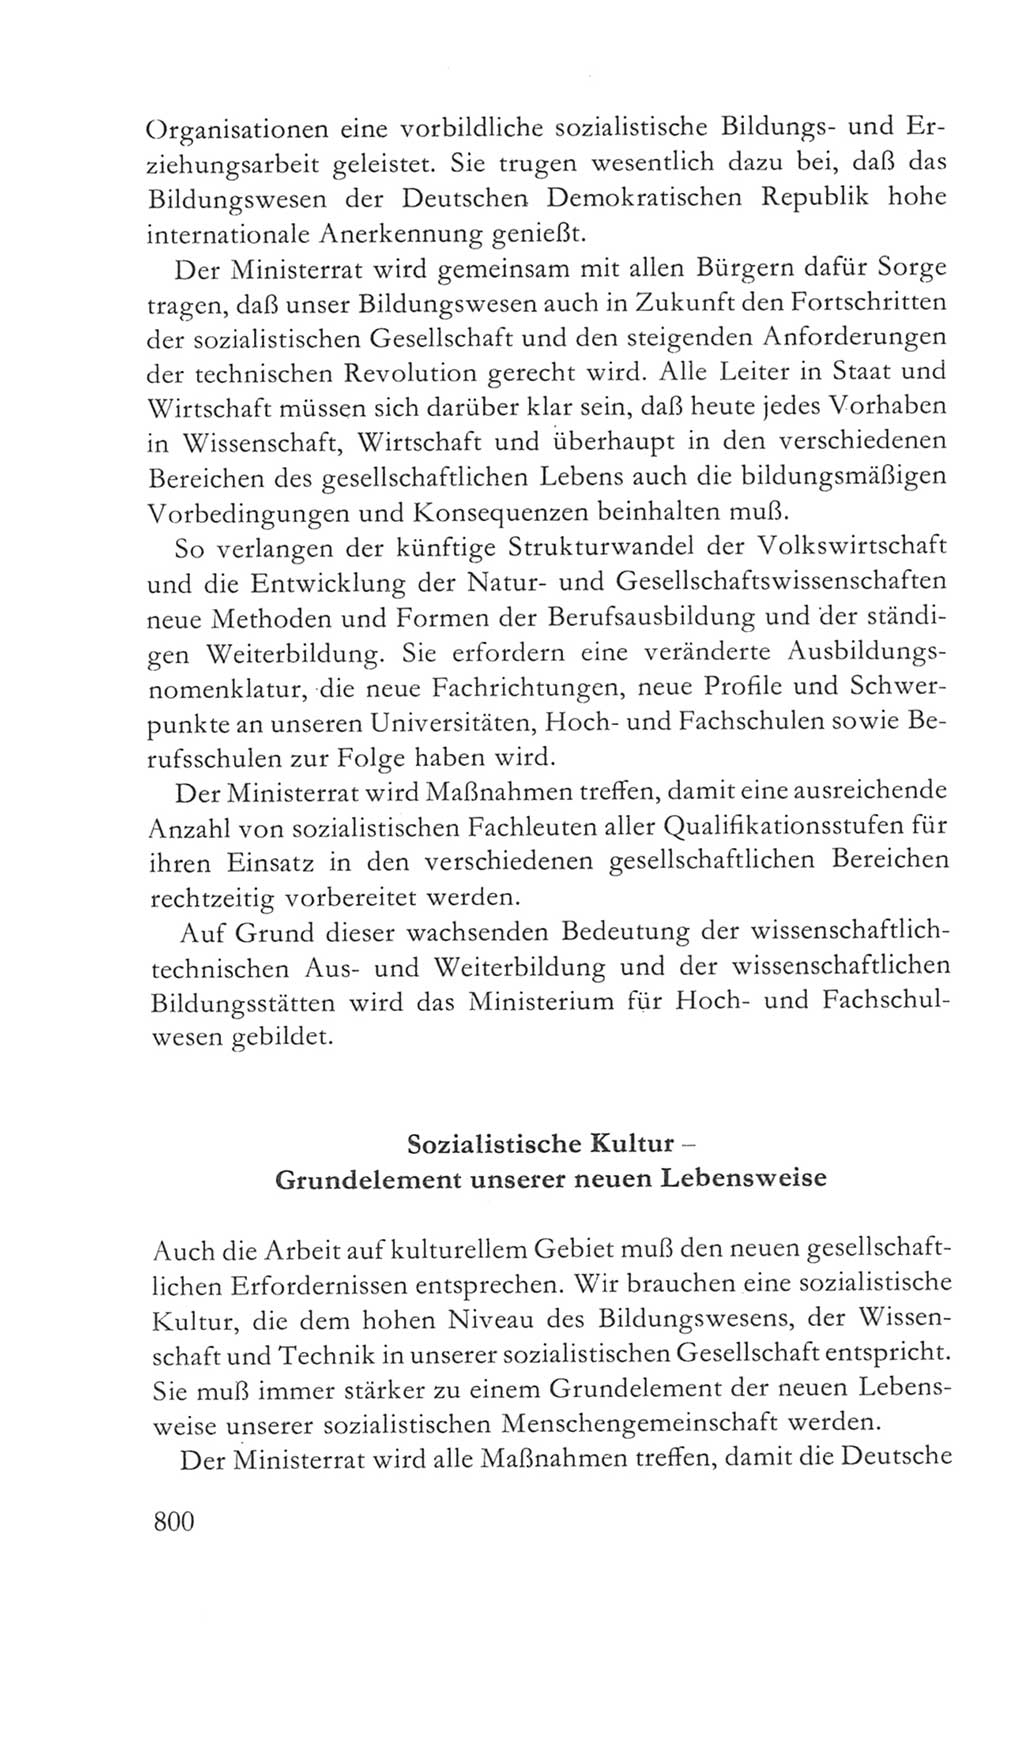 Volkskammer (VK) der Deutschen Demokratischen Republik (DDR) 5. Wahlperiode 1967-1971, Seite 800 (VK. DDR 5. WP. 1967-1971, S. 800)